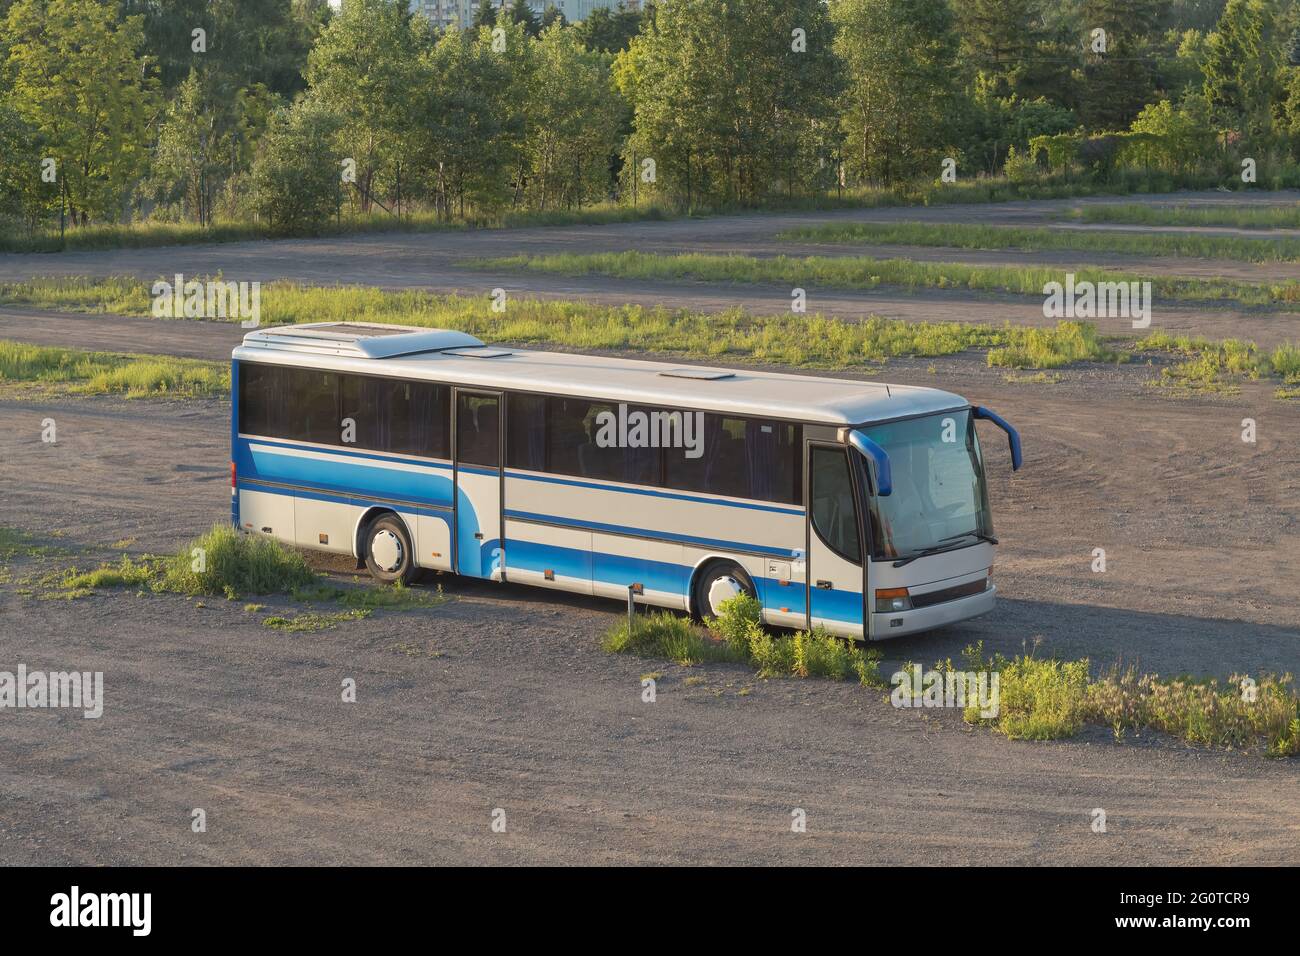 Der Bus steht auf einem Feld auf einer unbefestigten Straße. Bus in der Mitte des Feldes. Hintergrund mit Platz für Text Stockfoto